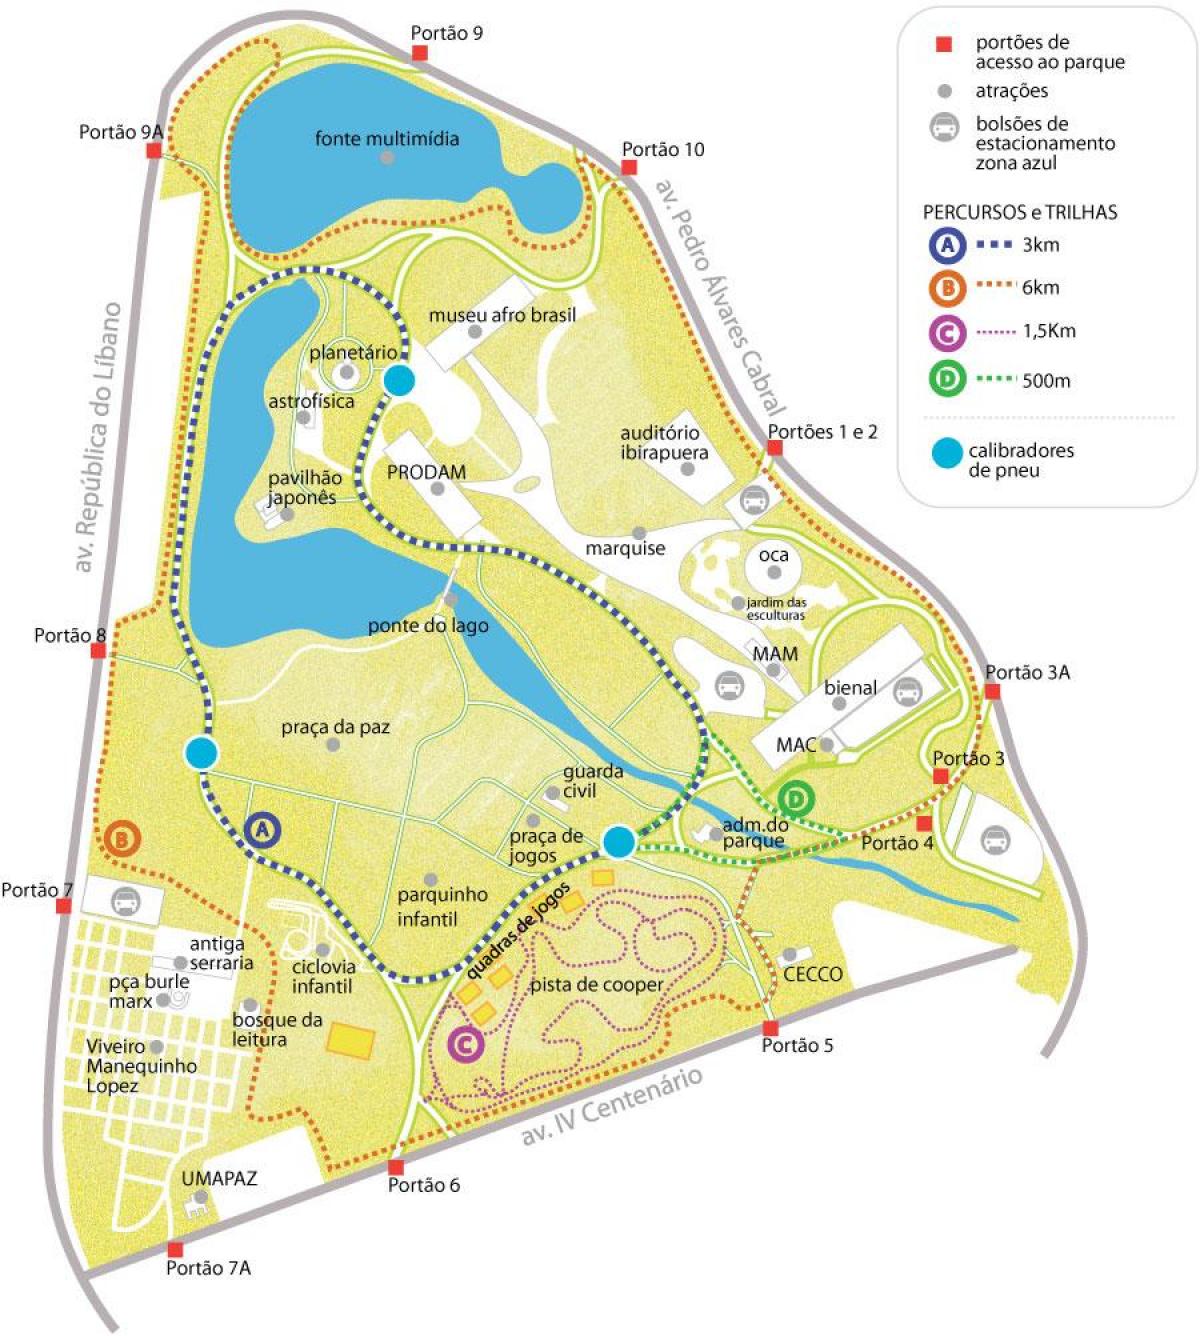 地図のイビラプエラ公園